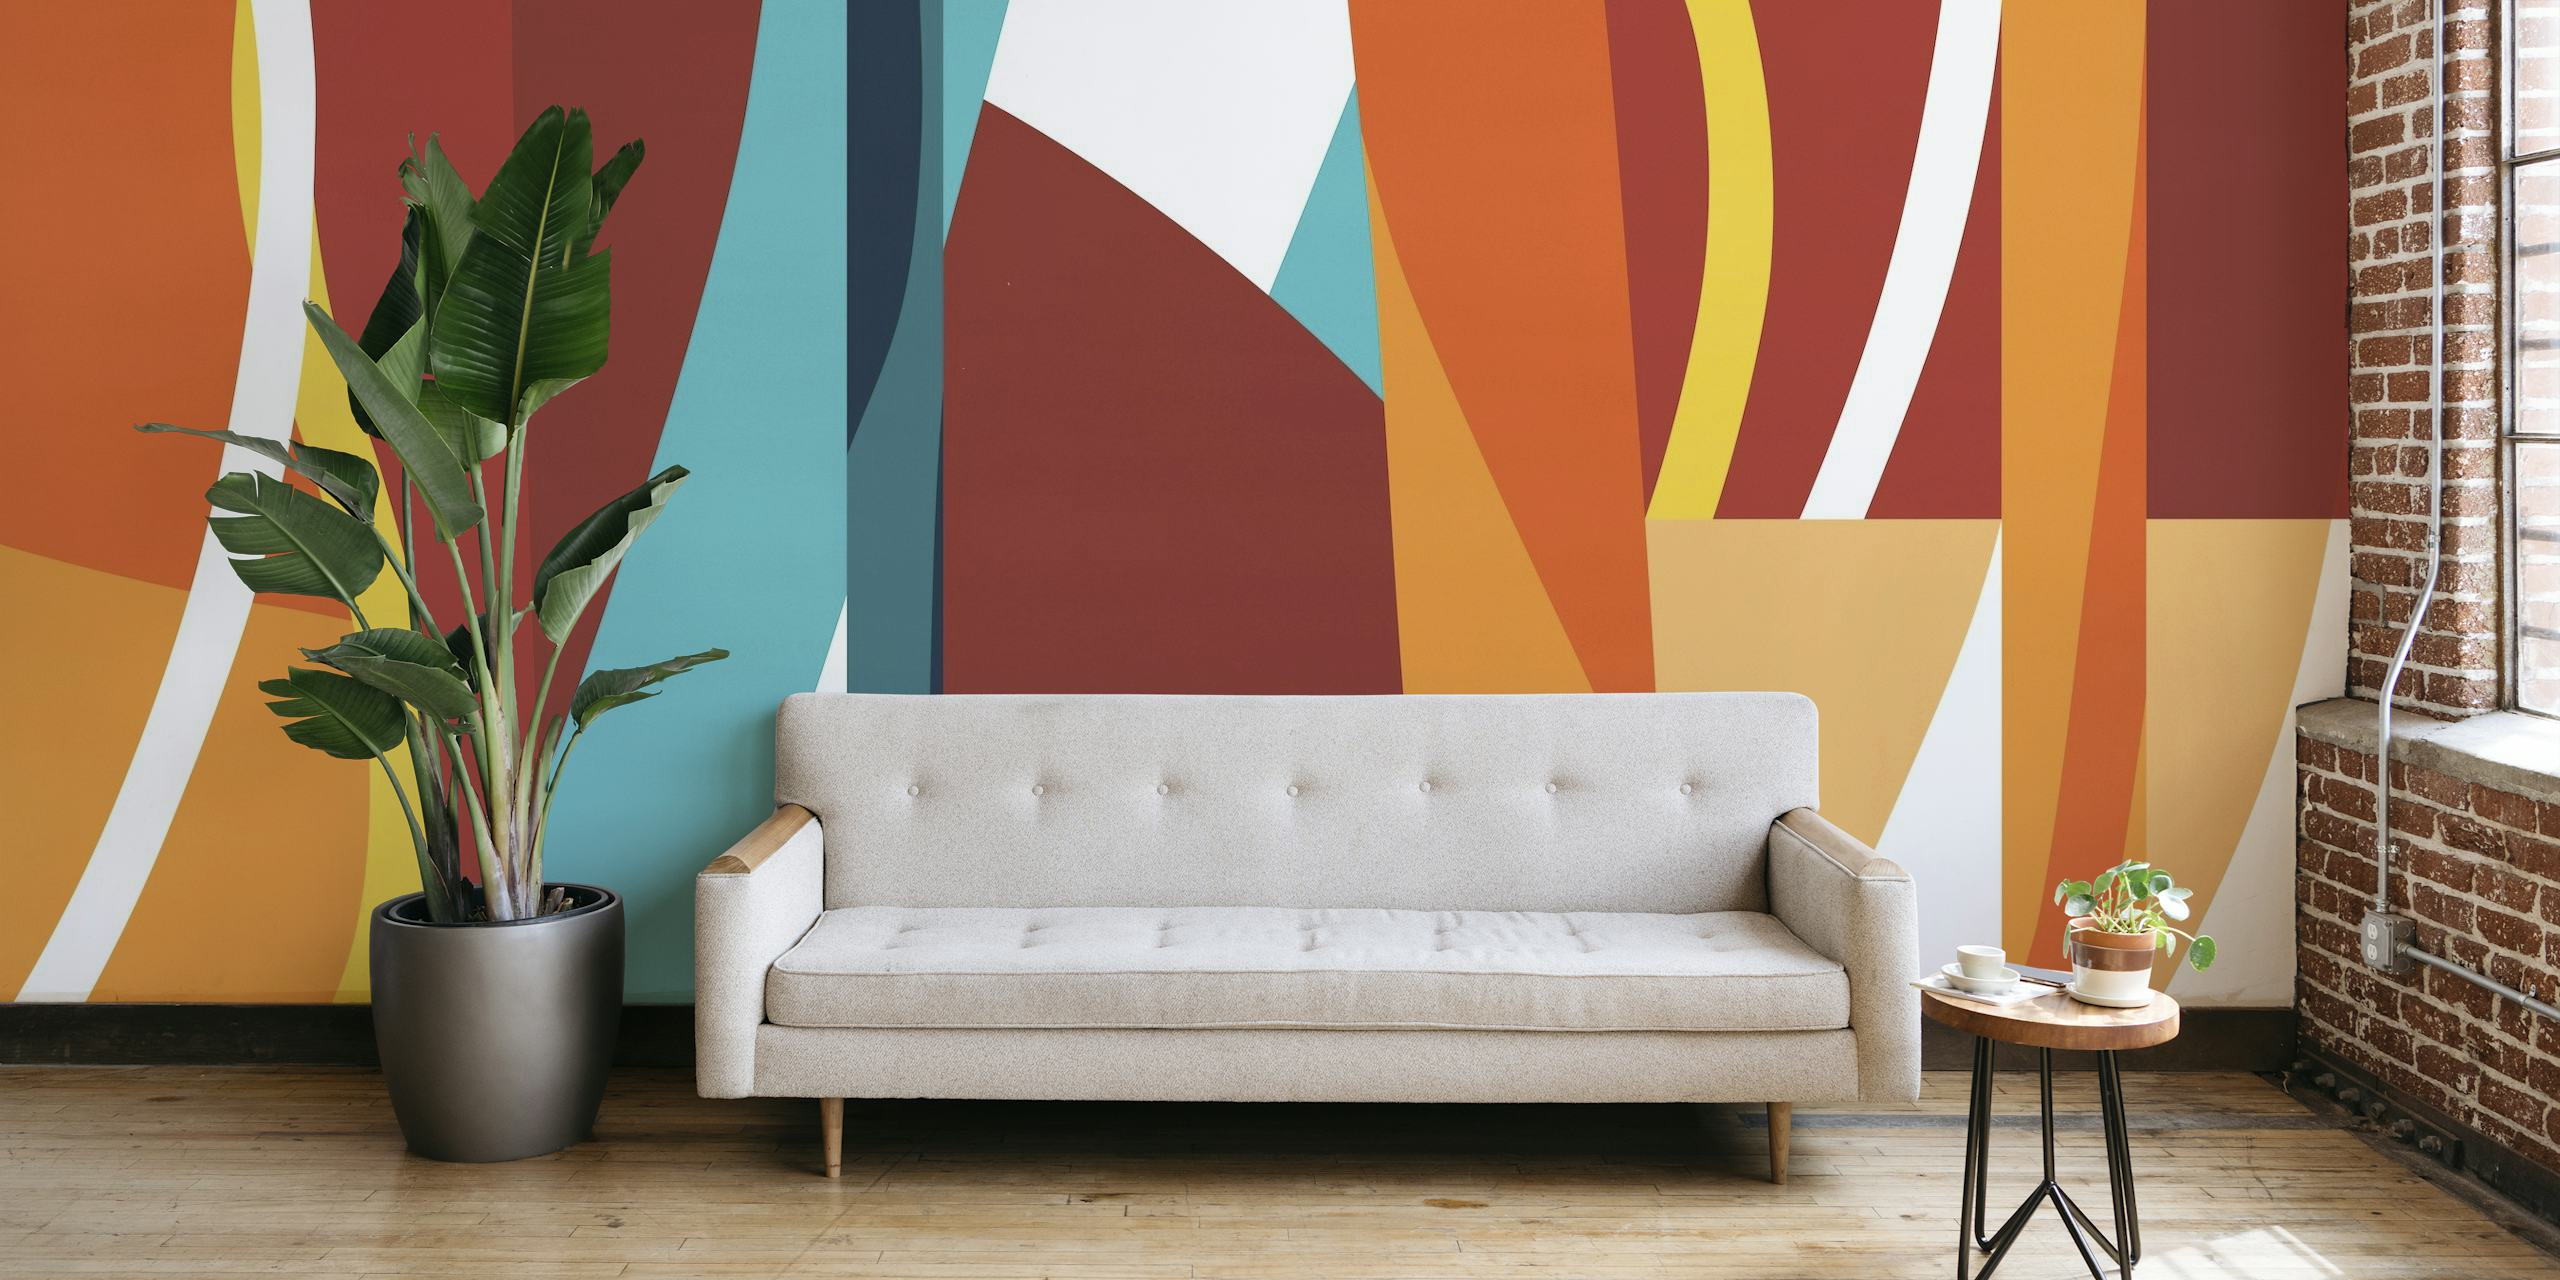 Dinamičan apstraktni zidni mural s potezima u boji crvene, narančaste, žute i plave